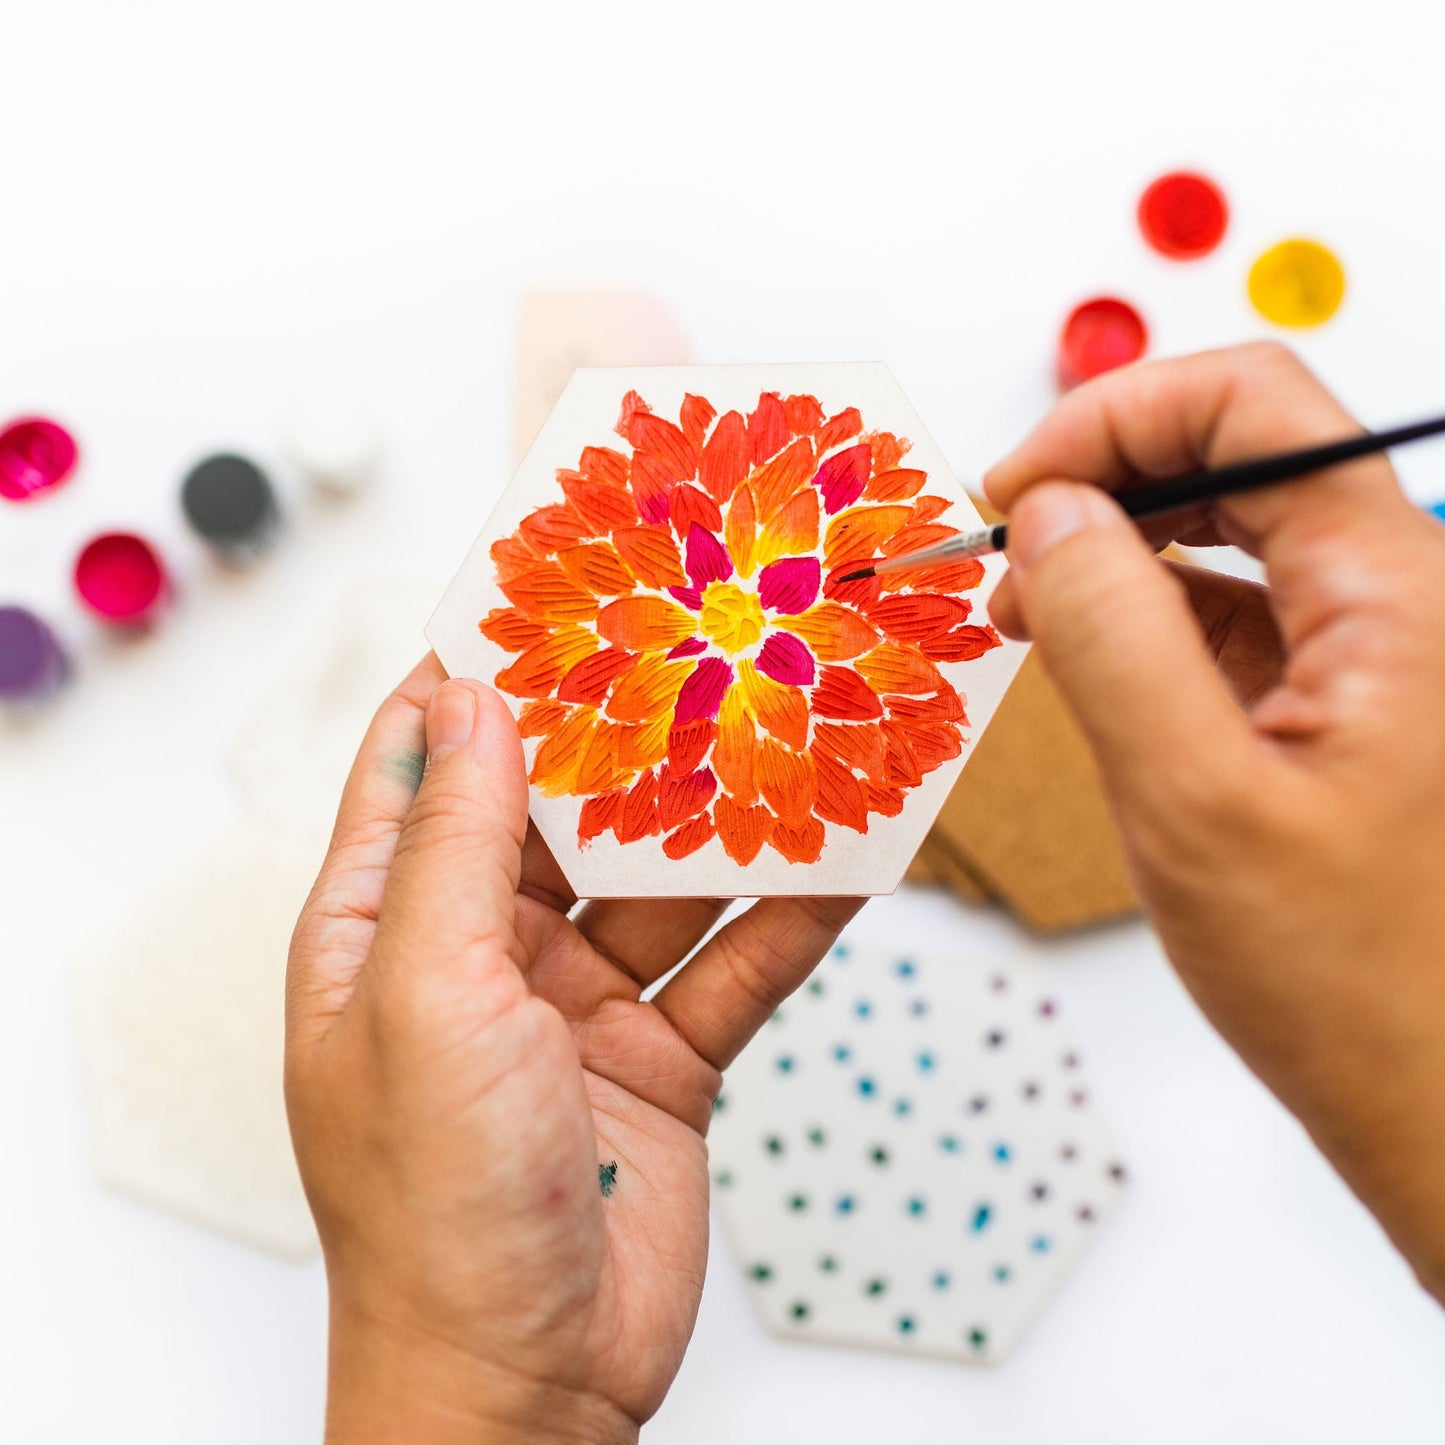 DIY Coasters - Flowers Paint Kit - by LeeMo Designs in Bend, Oregon